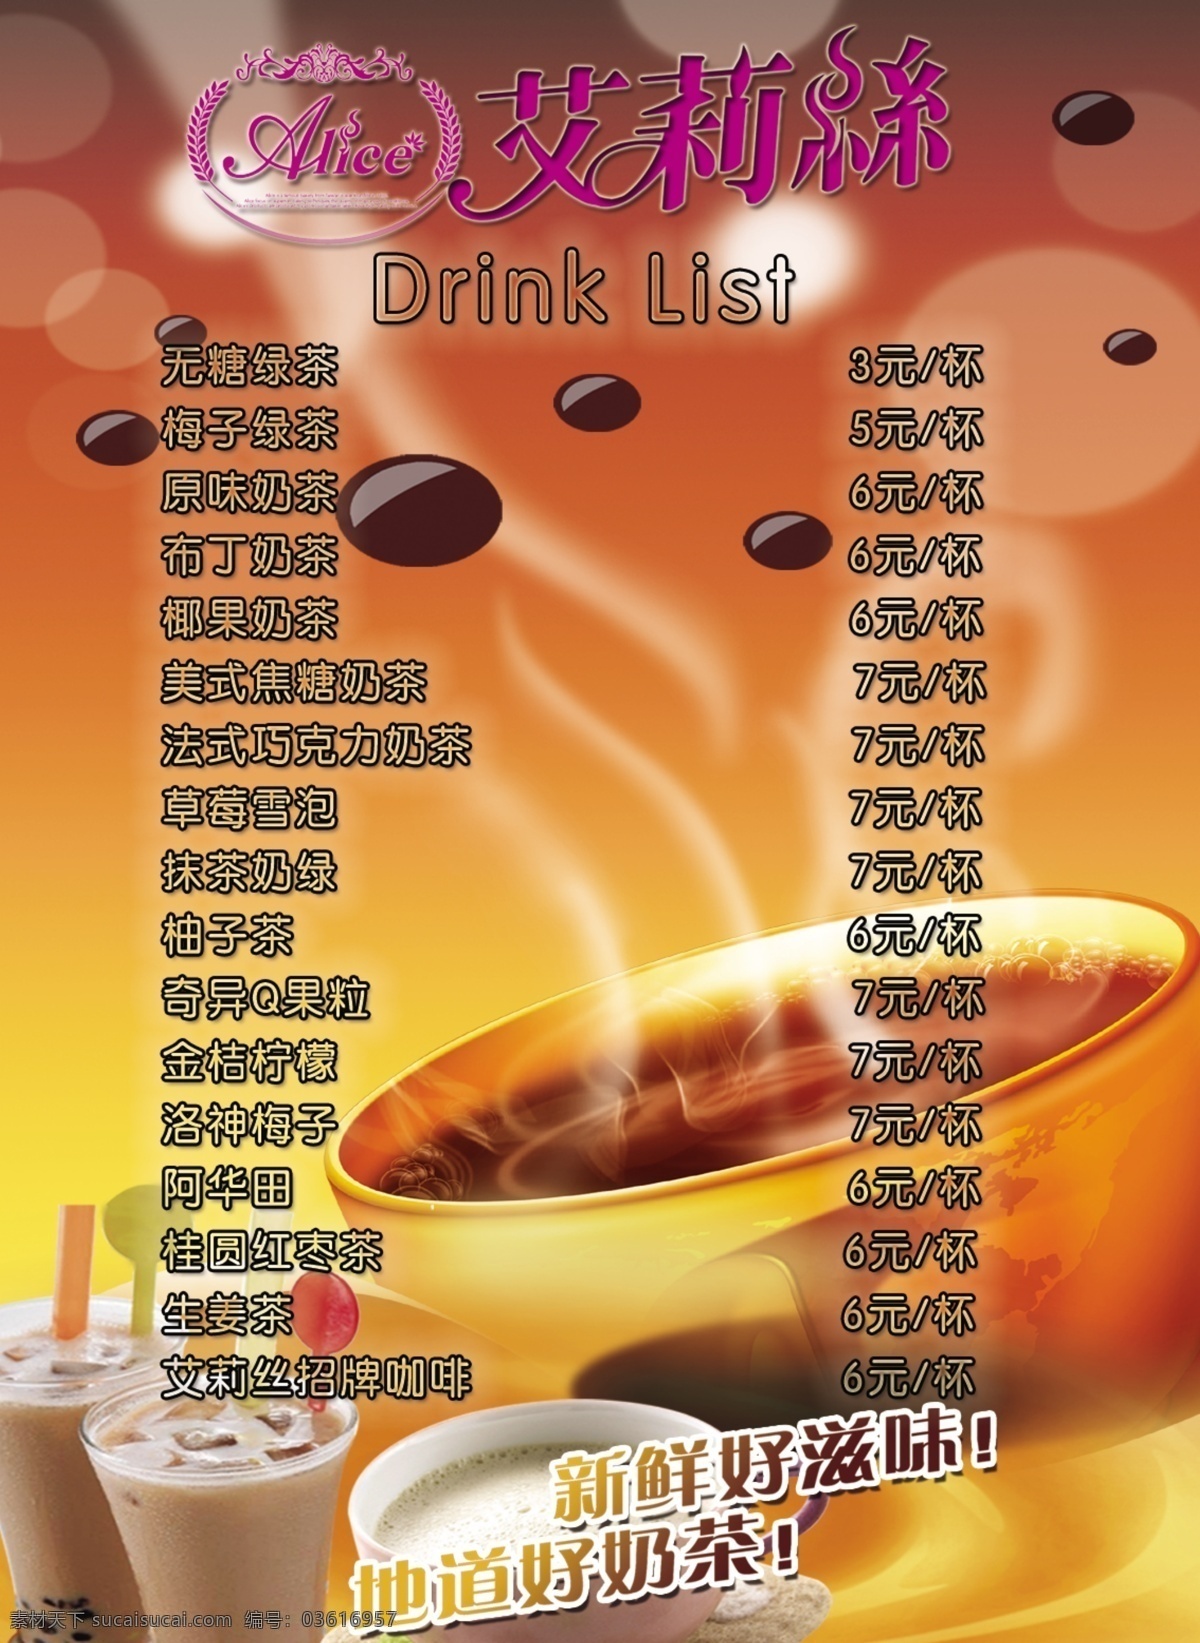 菜单 菜单菜谱 广告设计模板 咖啡 奶茶 饮料 饮品 饮品菜单 模板下载 源文件 画册 菜谱 封面